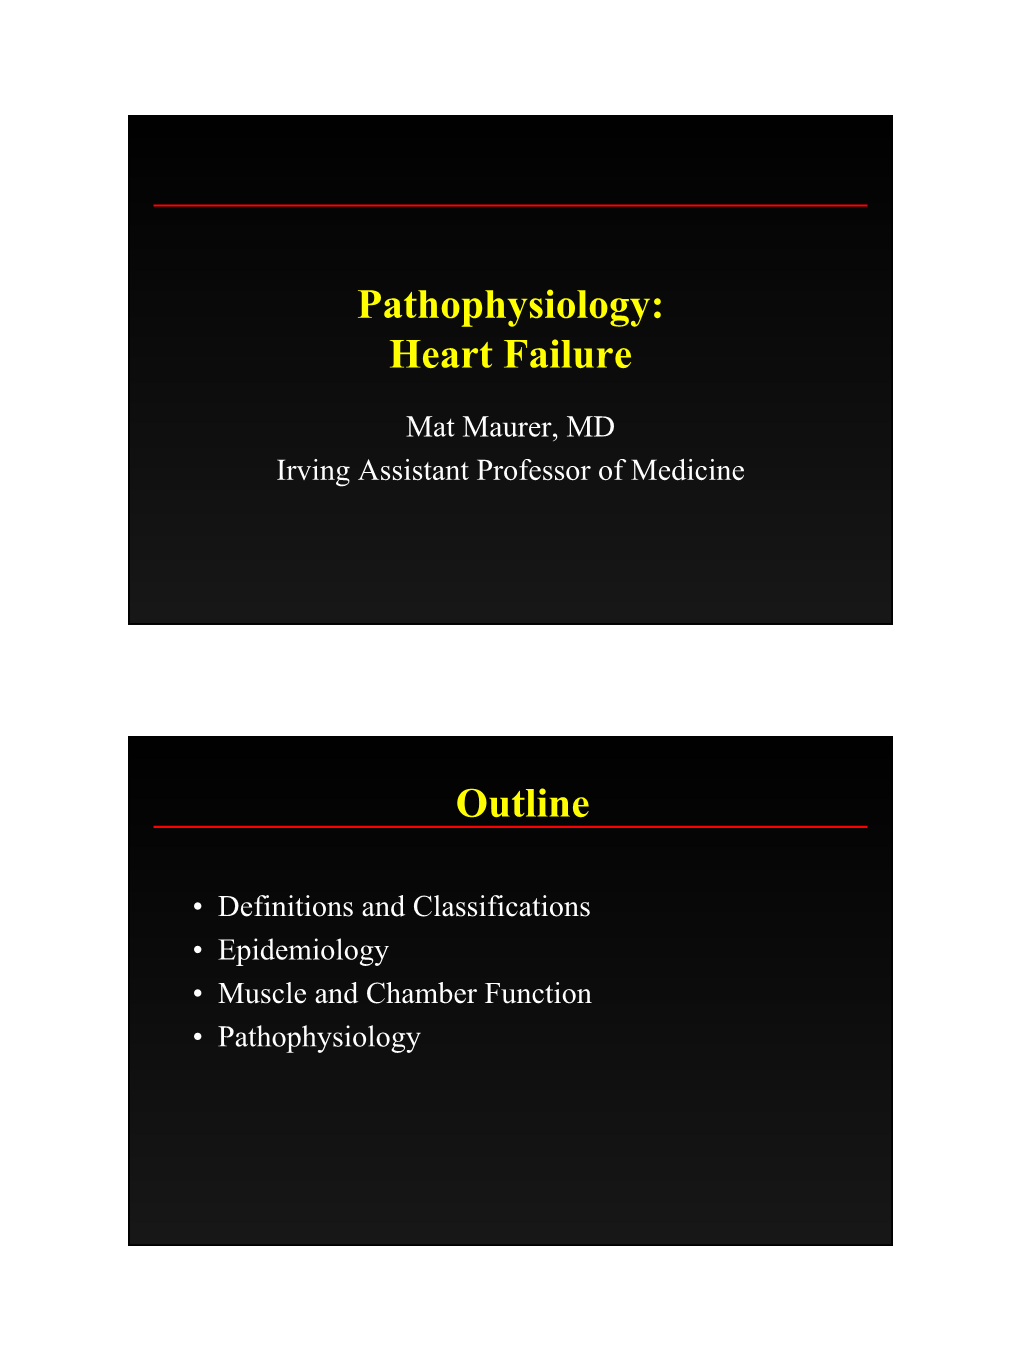 Pathophysiology: Heart Failure Outline